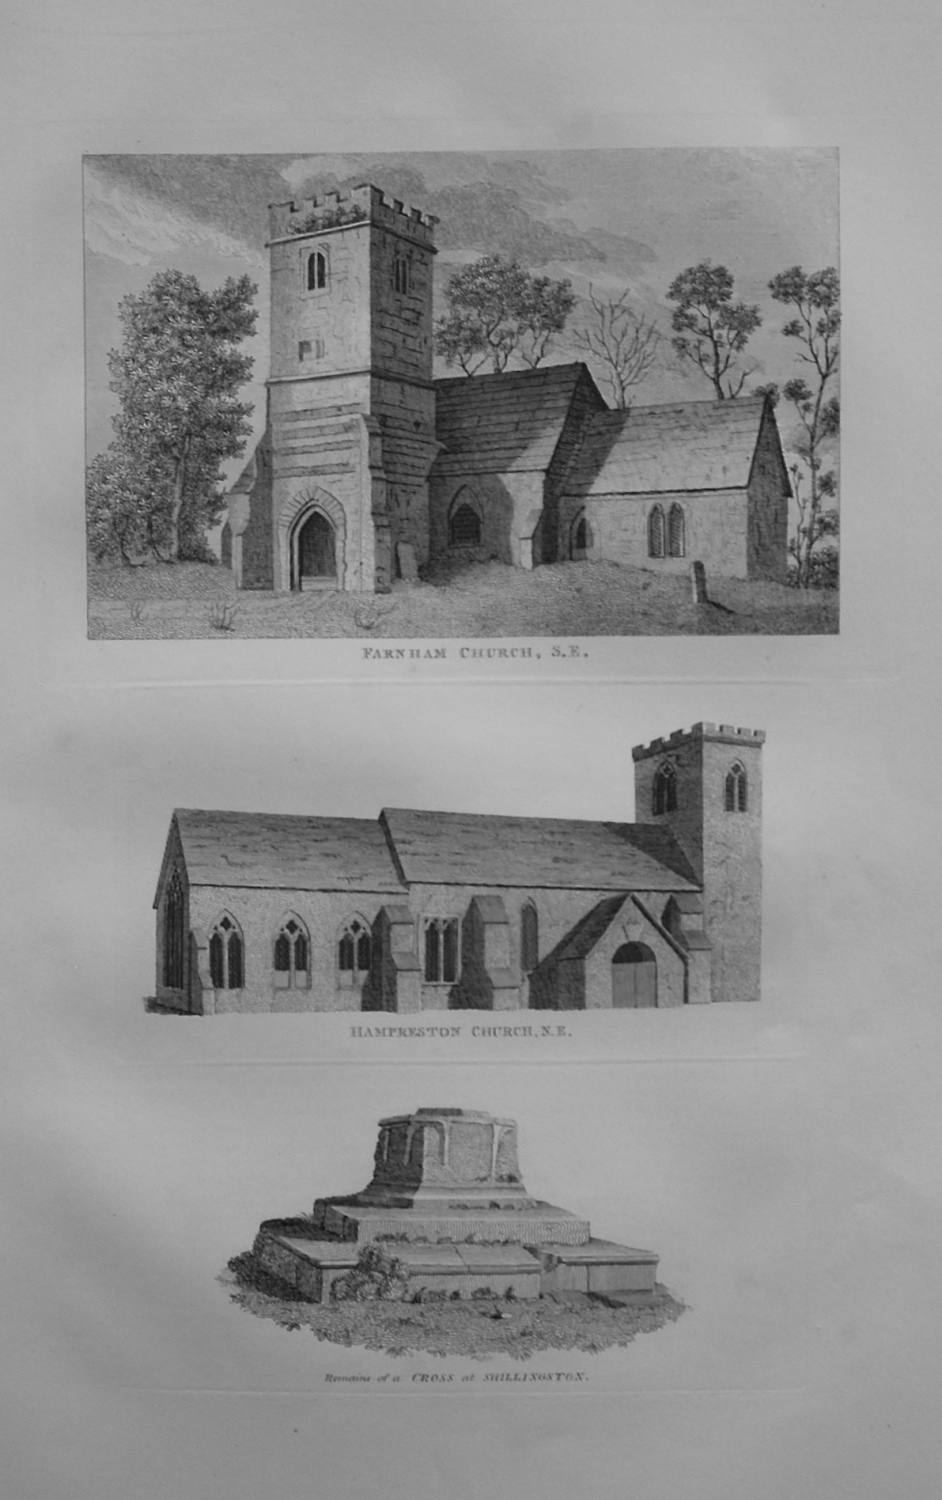 Farnham Church, S.E. - Hampreston Church, N.E. - Remains of a Cross at Shil